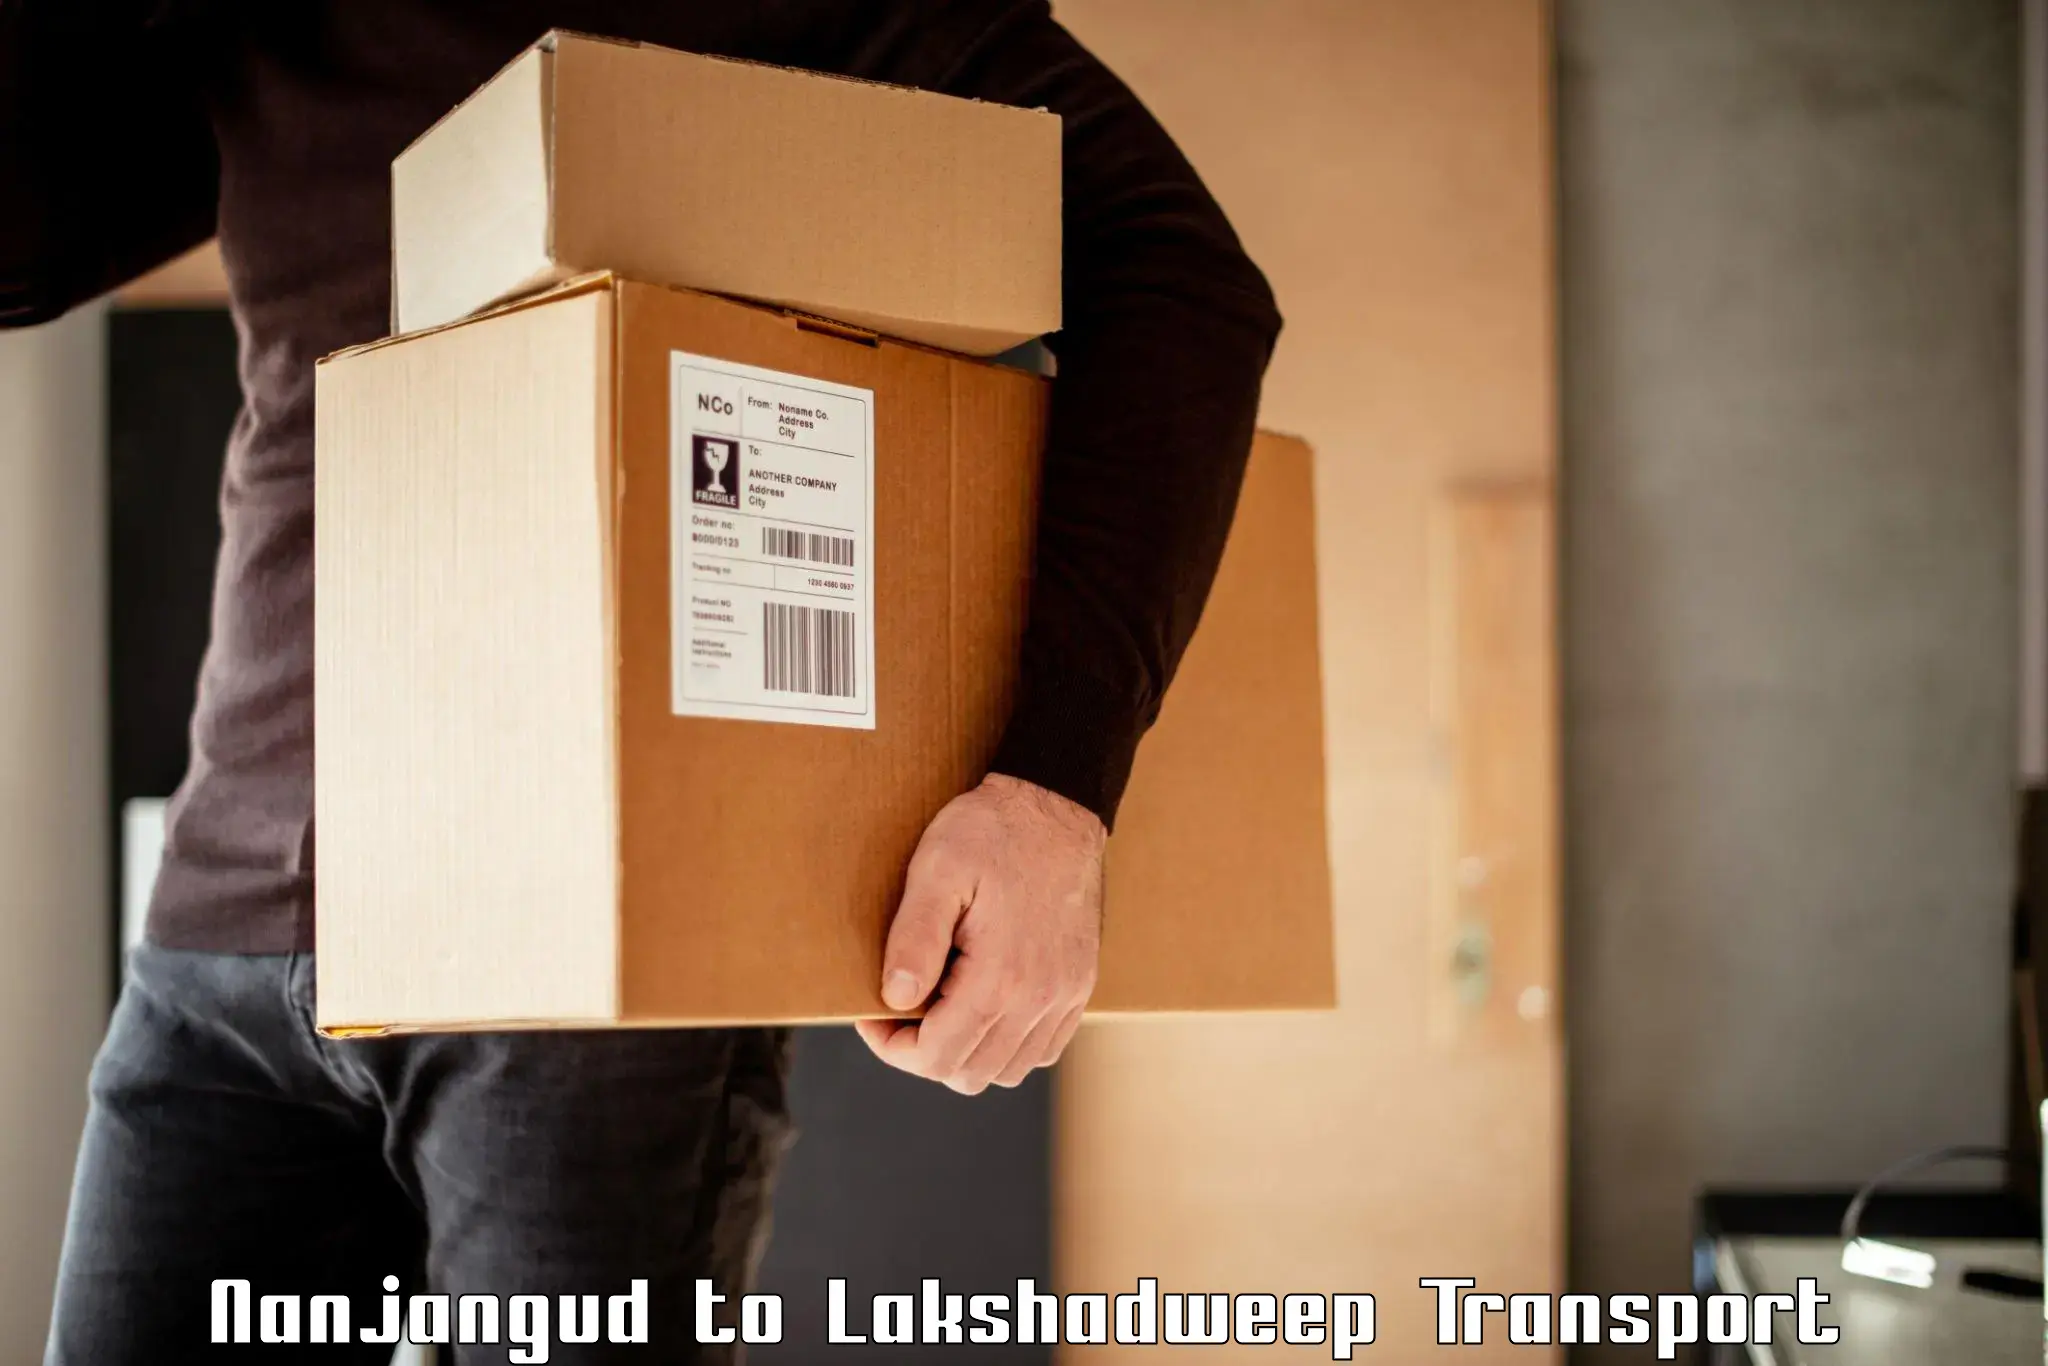 Furniture transport service Nanjangud to Lakshadweep